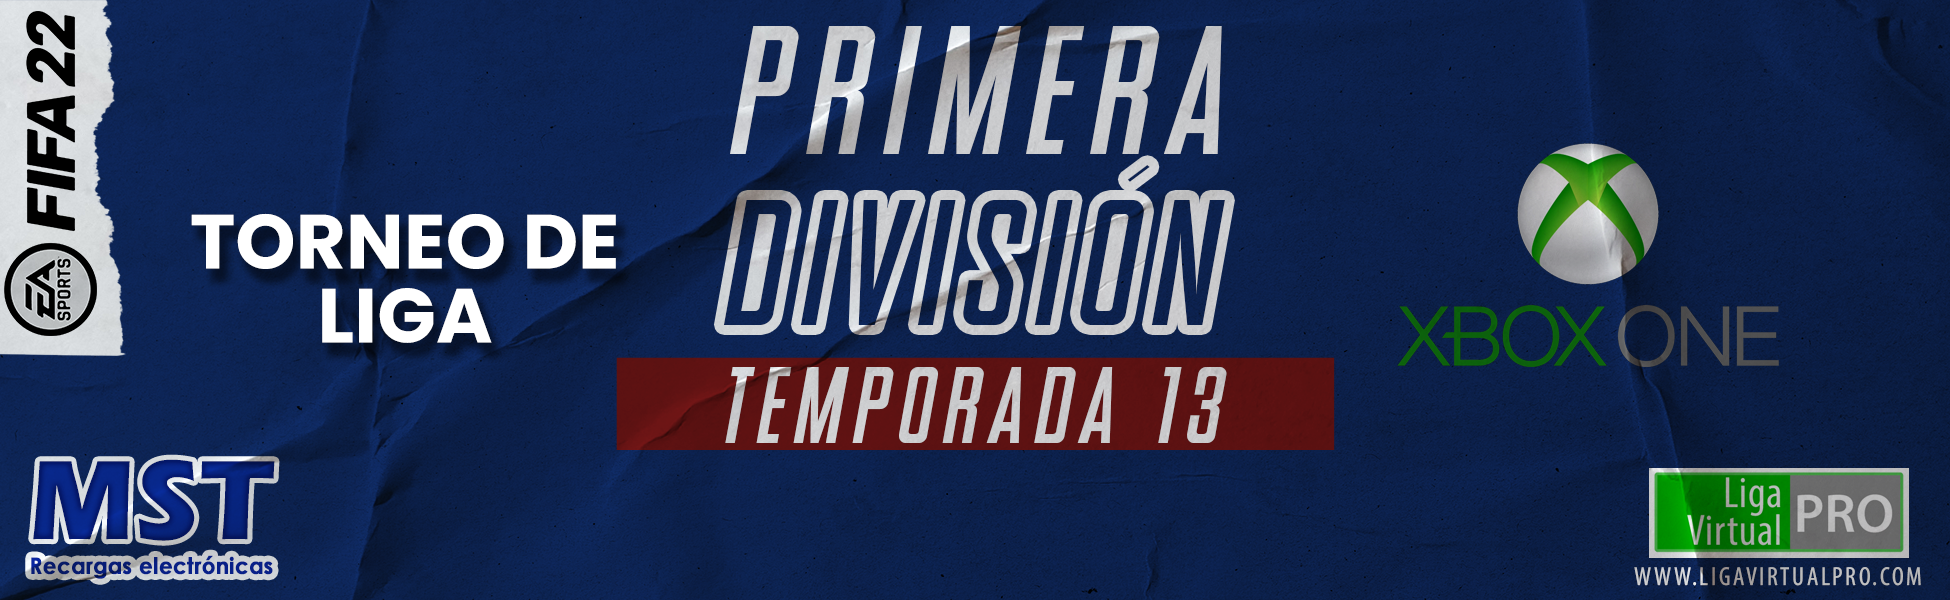 Logo-PRIMERA DIVISIÓN XBOX ONE - TEMPORADA 13 